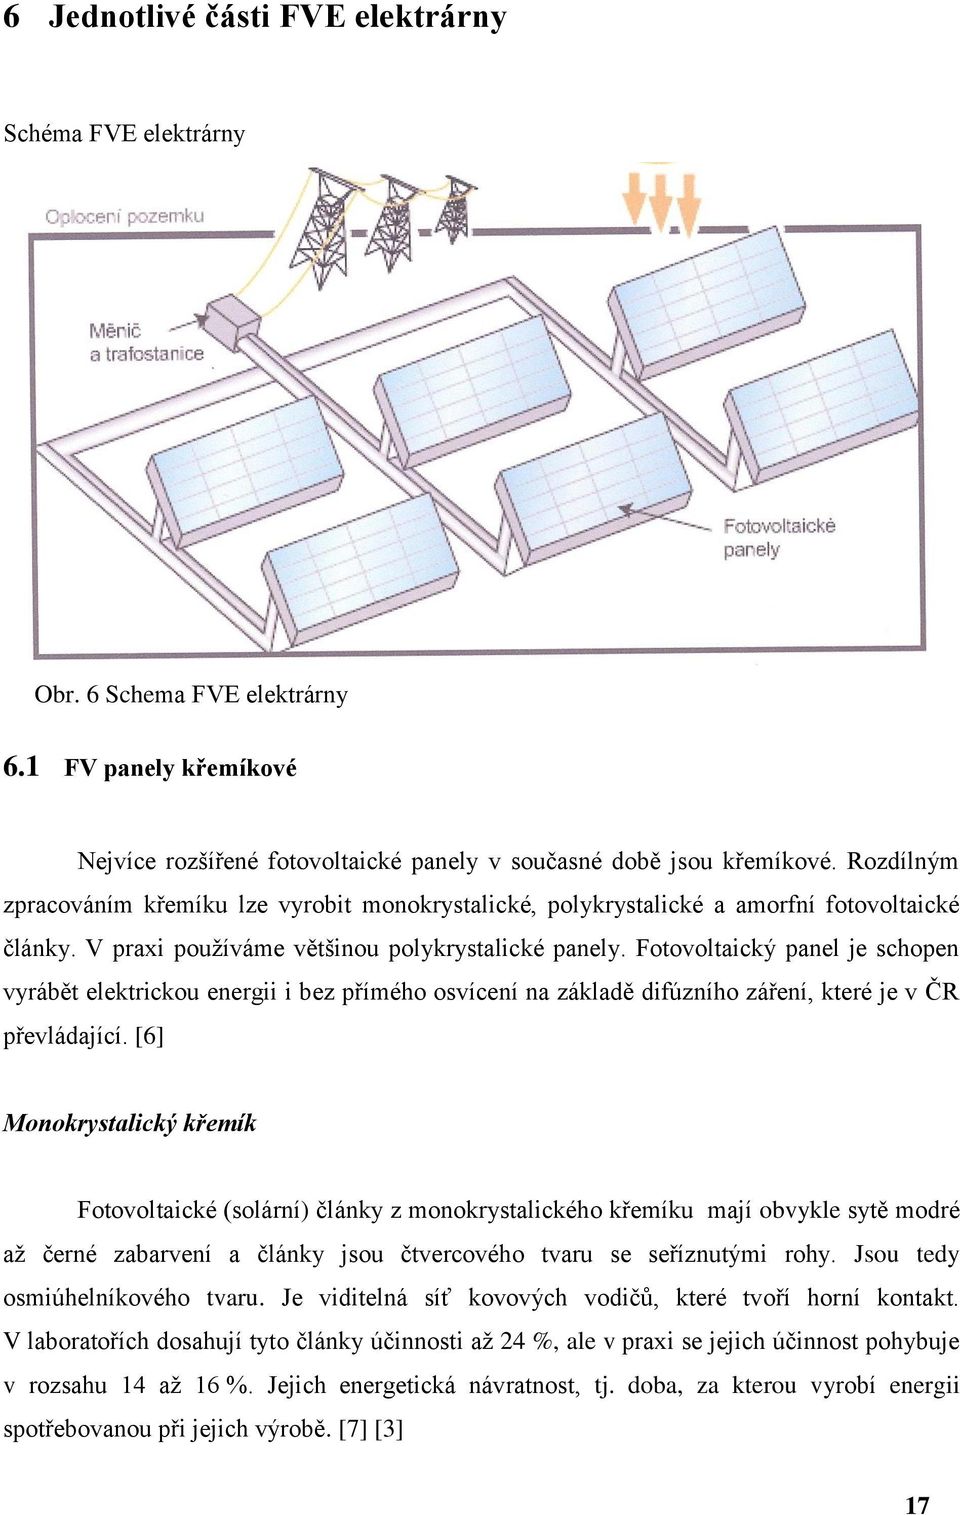 Fotovoltaický panel je schopen vyrábět elektrickou energii i bez přímého osvícení na základě difúzního záření, které je v ČR převládající.